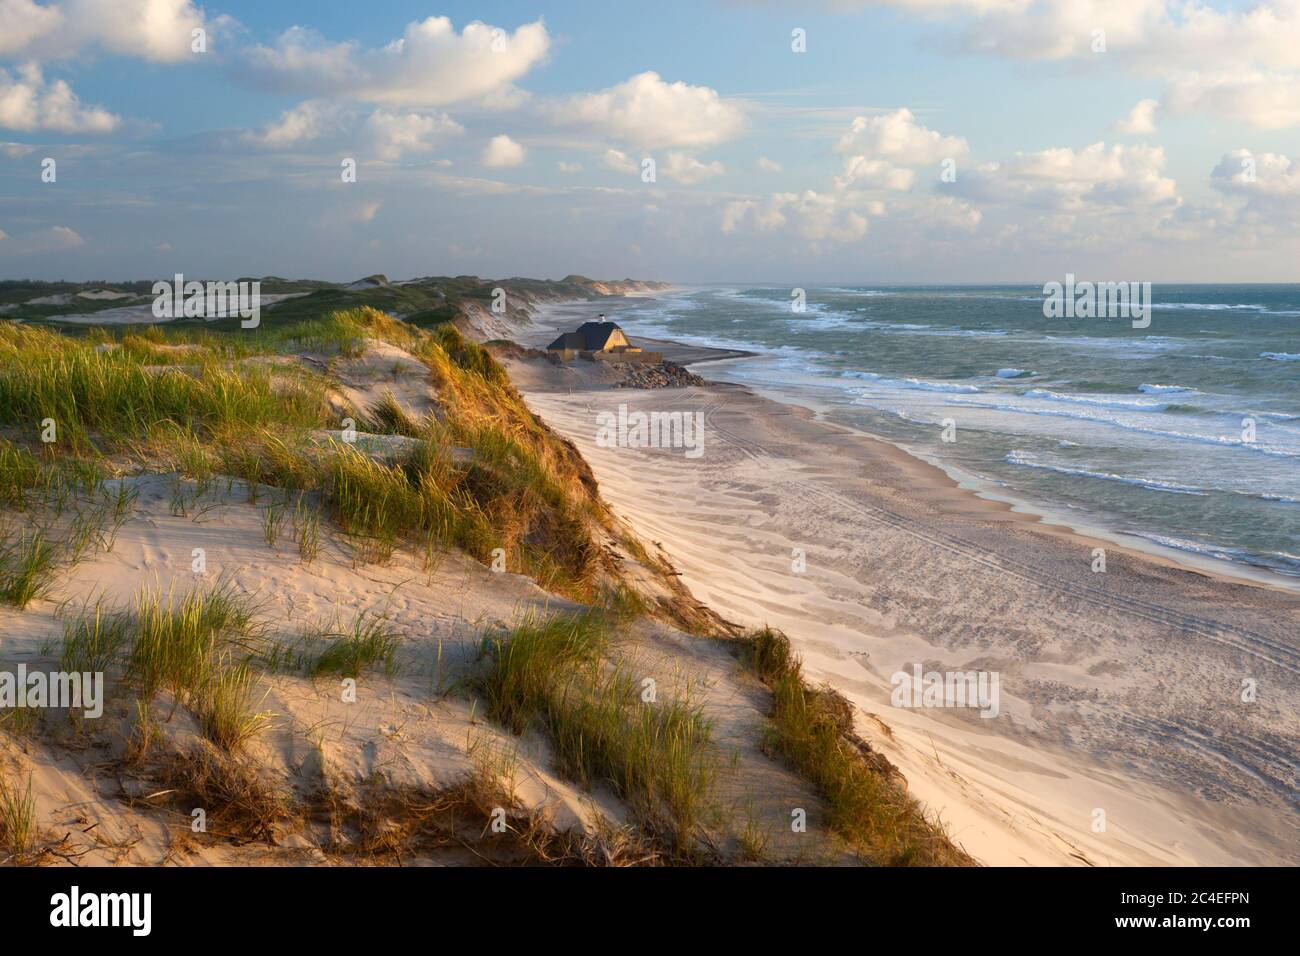 Vista a lo largo de la playa y dunas de arena durante el tiempo tormentoso, Gammel Skagen, Jutland, Dinamarca, Europa Foto de stock